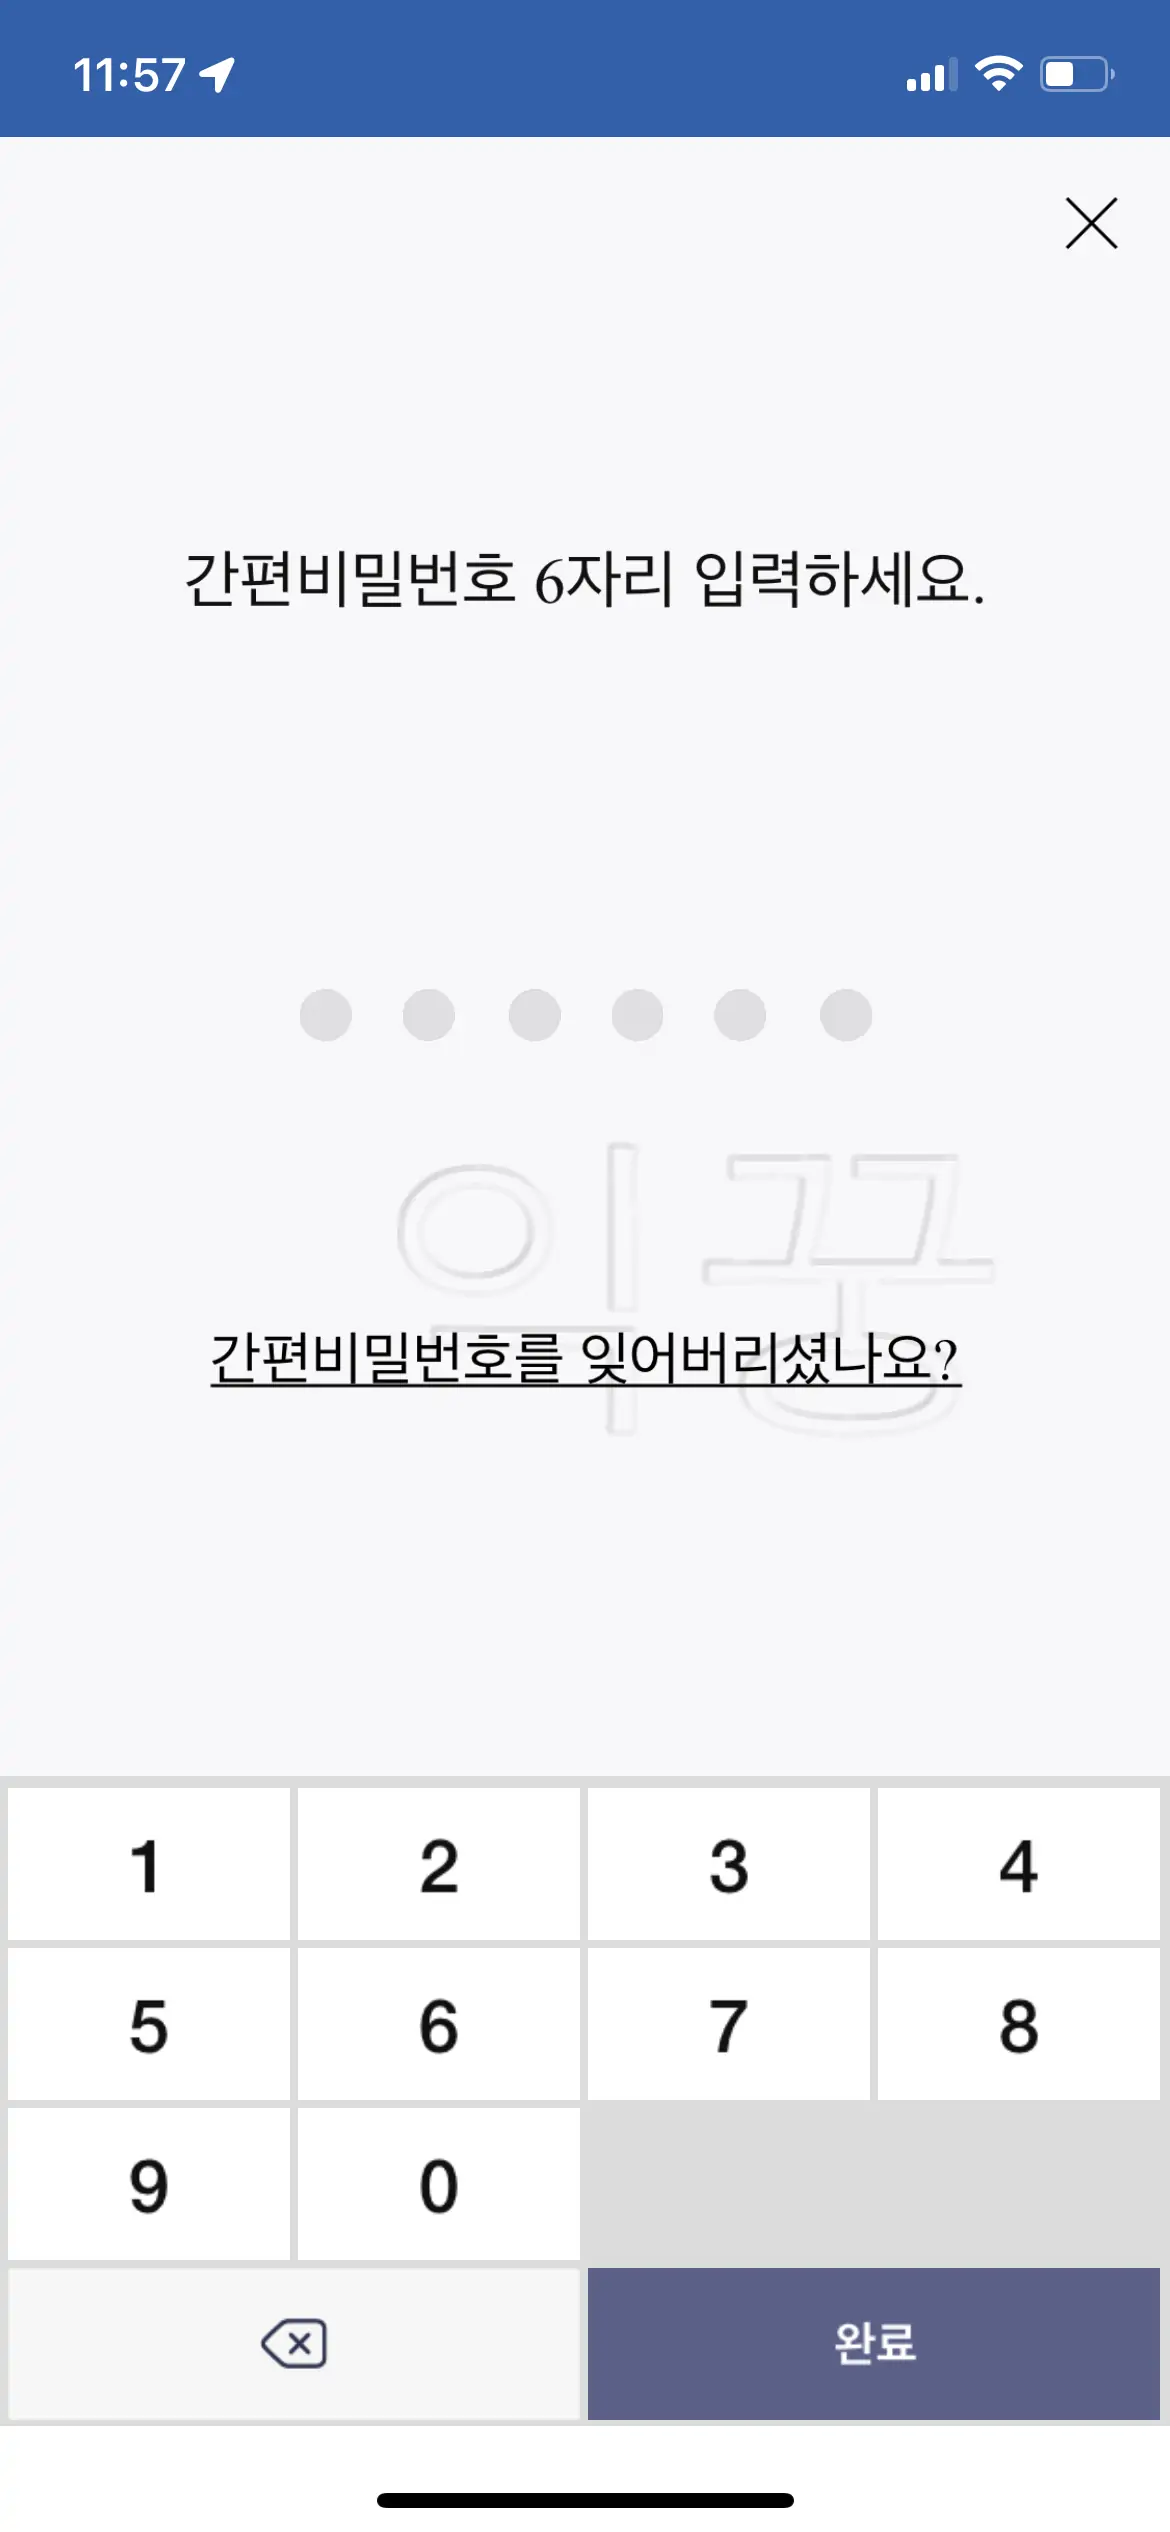 한국투자증권 메뉴검색 화면